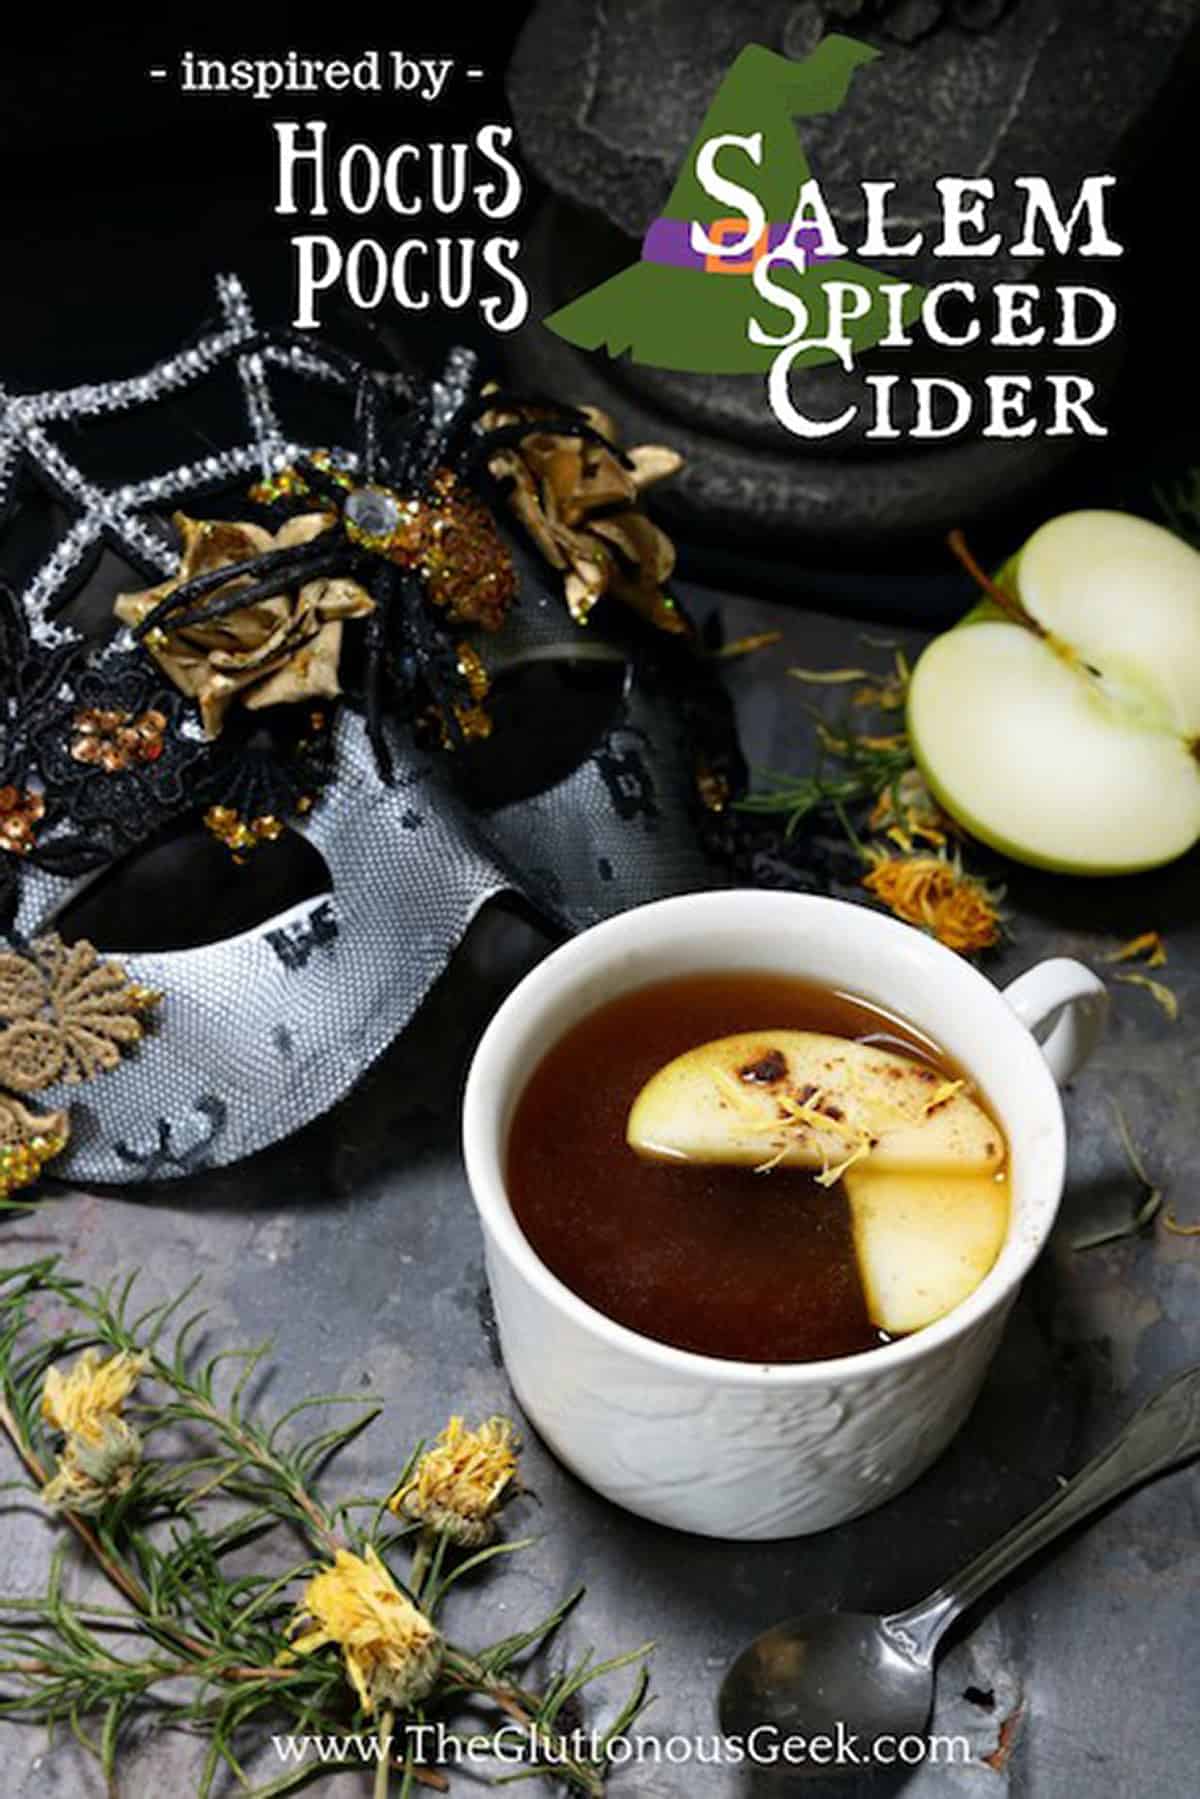 Salem cider in cup